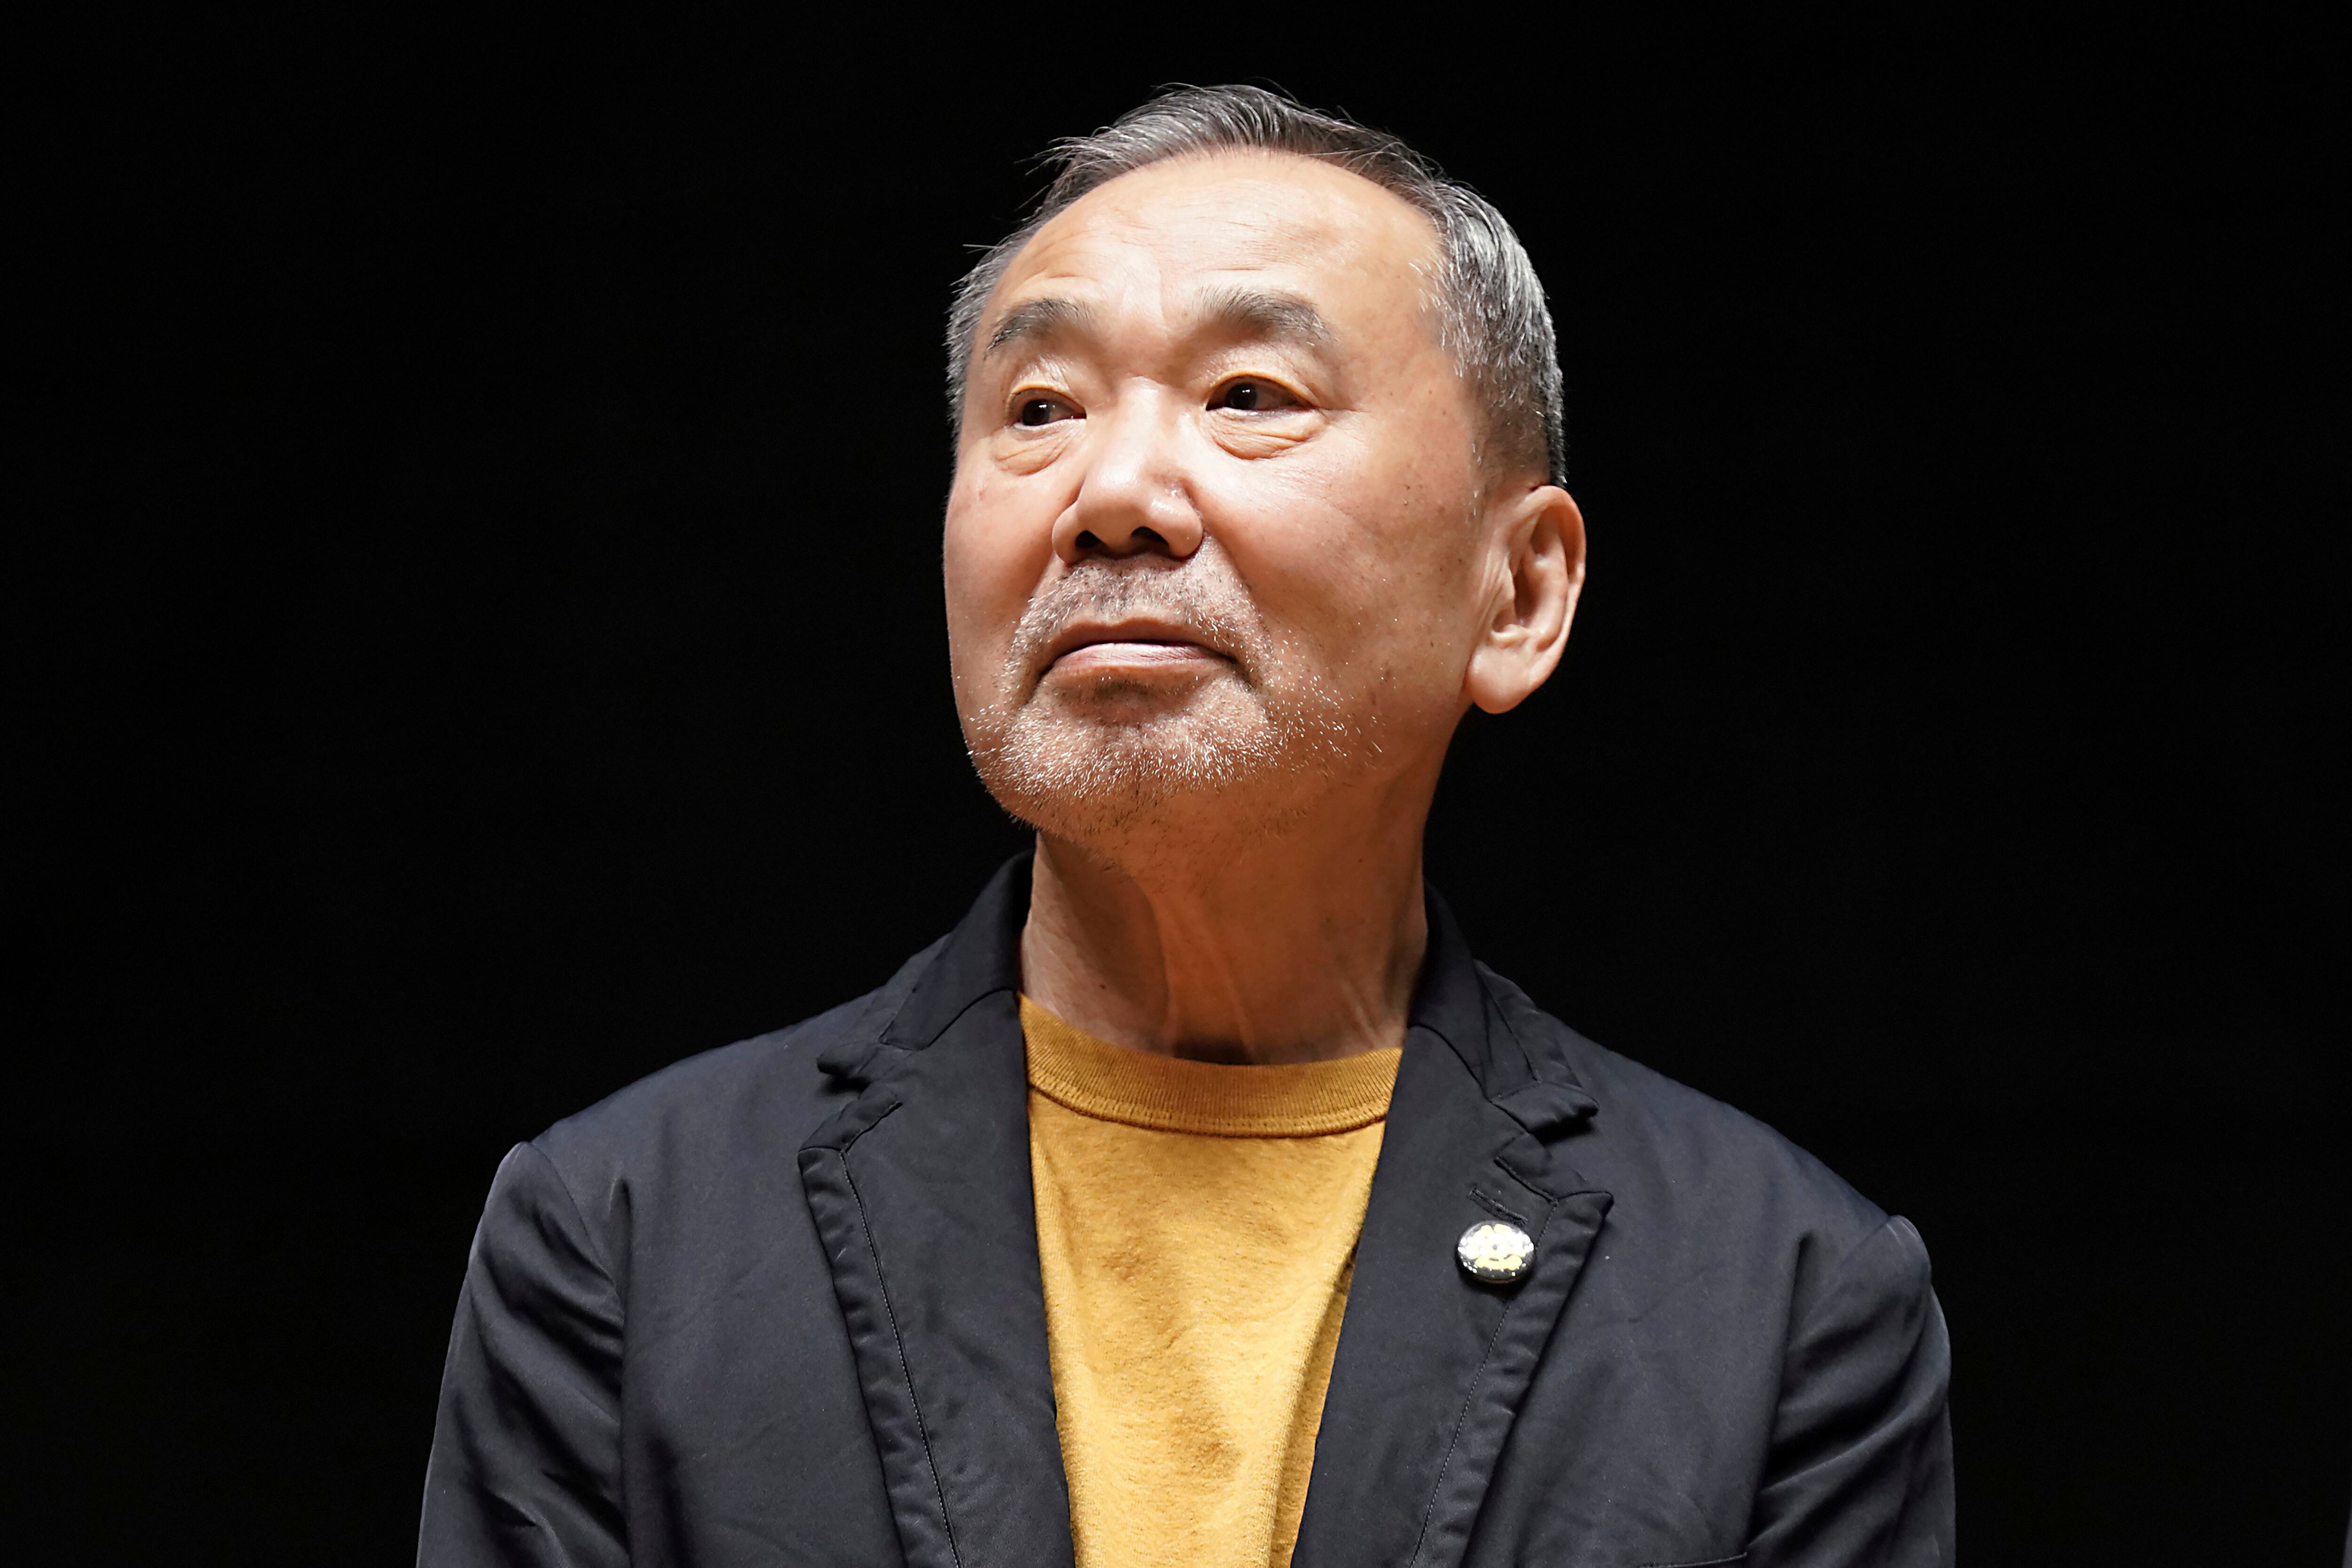 ARCHIVO - El novelista japonés Haruki Murakami posa para la foto durante una conferencia de prensa en la biblioteca que lleva su nombre en la Universidad Waseda, Tokio, 22 de setiembre de 2021. El popular escritor japonés ha ganado el Premio Princesa de Asturias de Literatura 2023, anunció la fundación que otorga los premios el miércoles 24 de mayo de 2023. (AP Foto/Eugene Hoshiko, File)